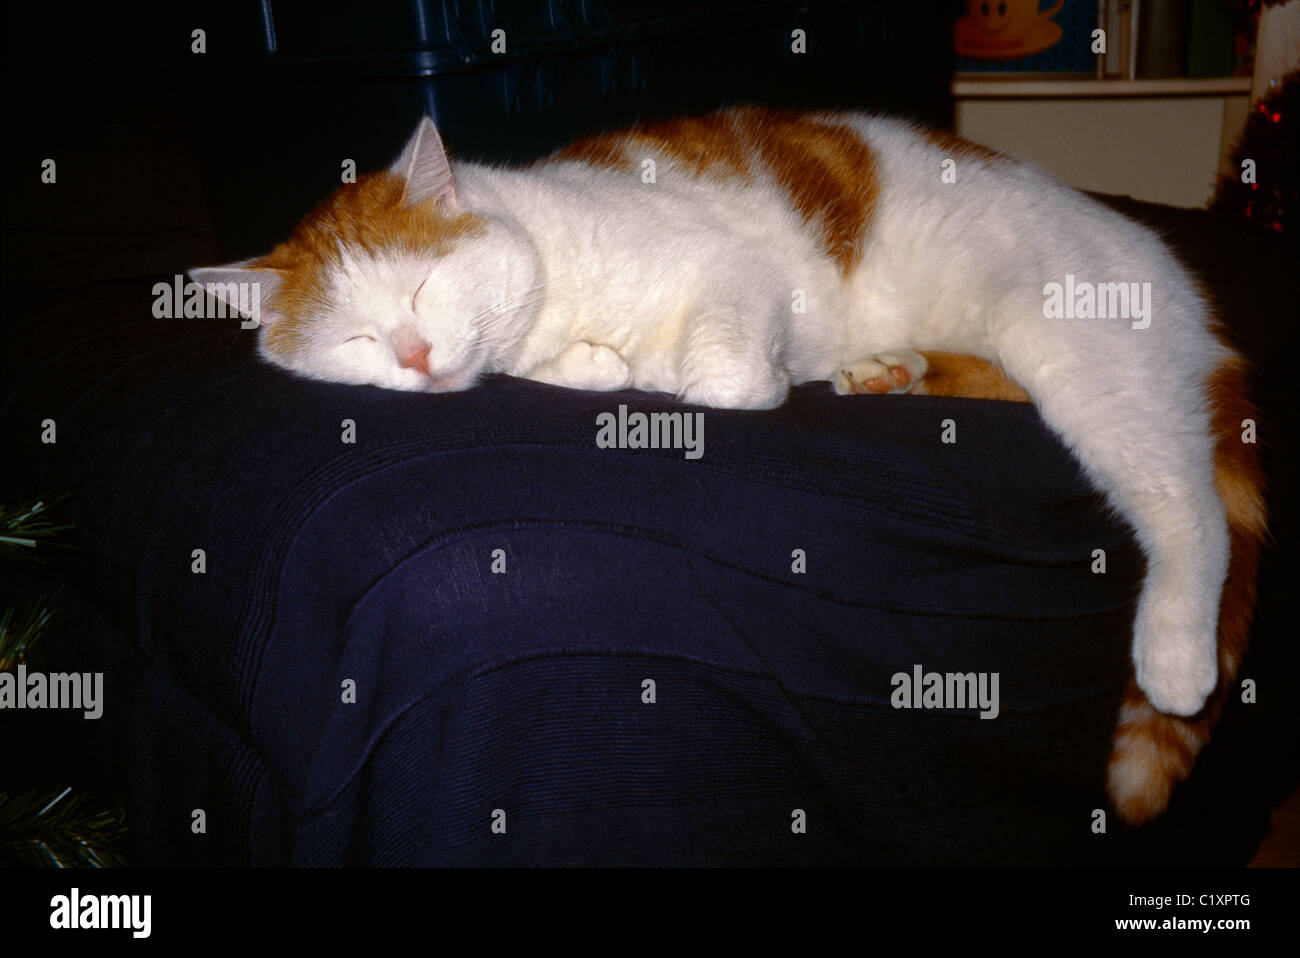 Sleeping Cat Ginger & White Tom Stock Photo